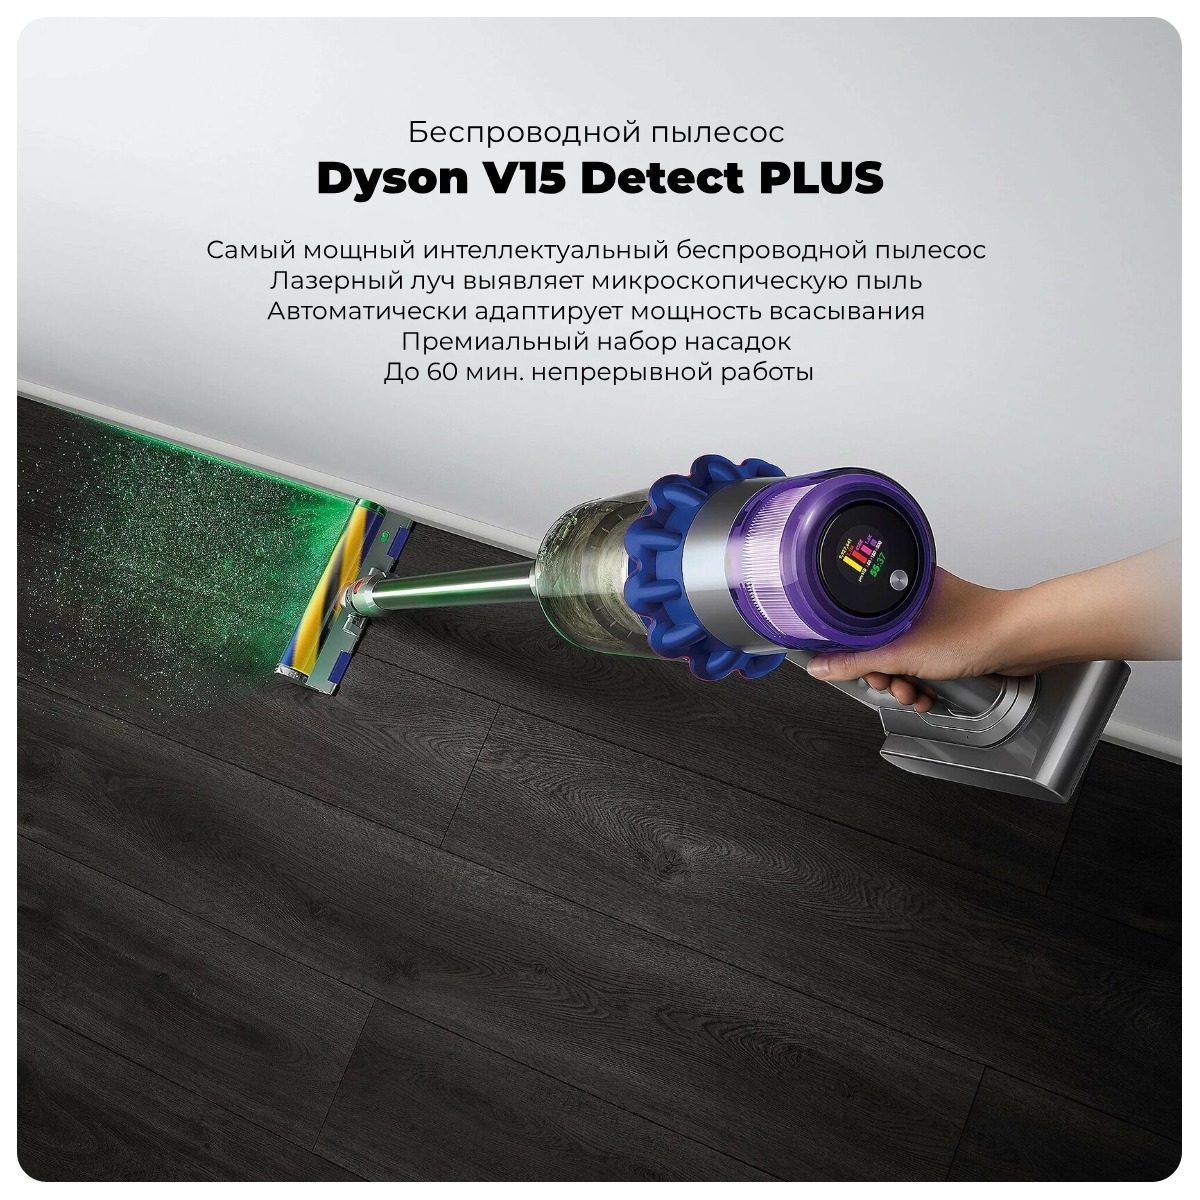 Dyson-V15-Detect-PLUS-01